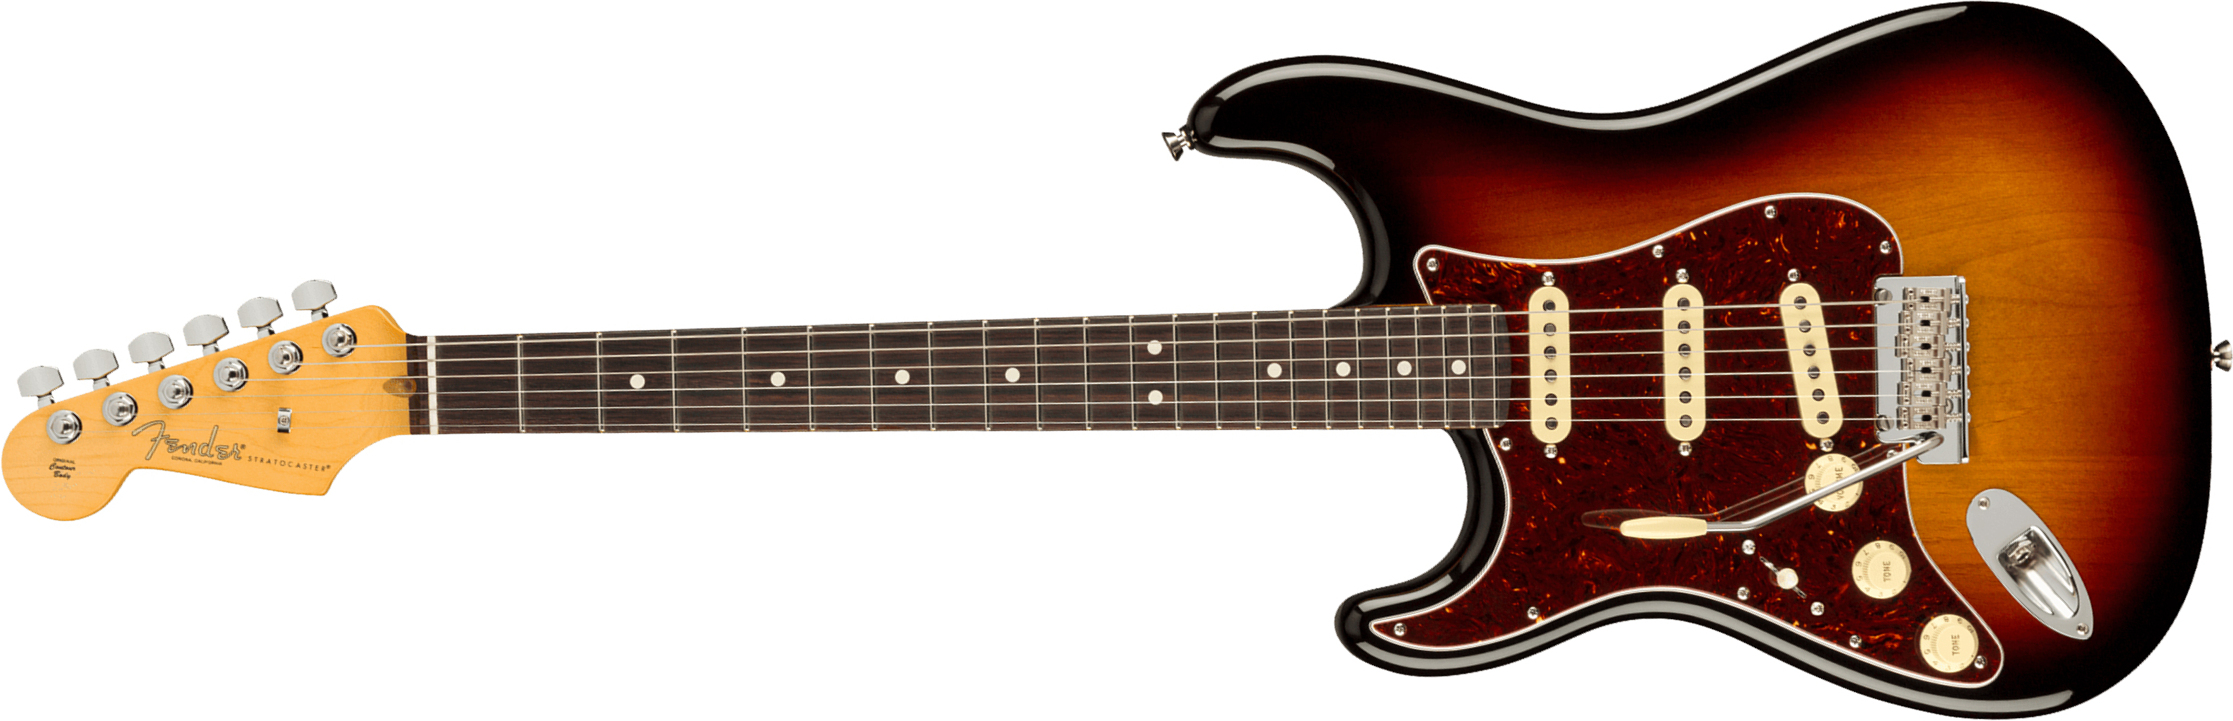 Fender Strat American Professional Ii Lh Gaucher Usa Rw - 3-color Sunburst - E-Gitarre für Linkshänder - Main picture